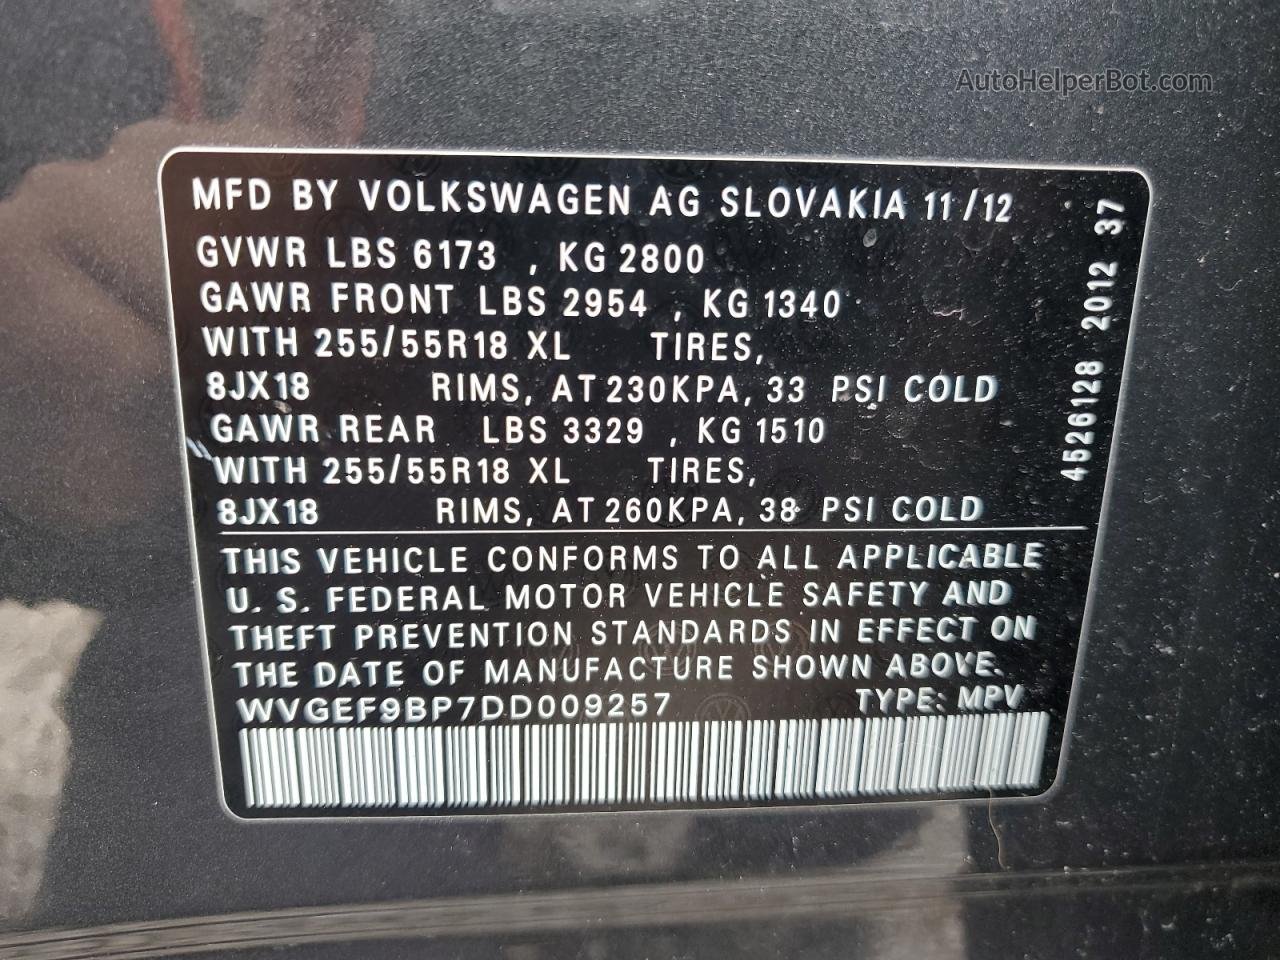 2013 Volkswagen Touareg V6 Gray vin: WVGEF9BP7DD009257